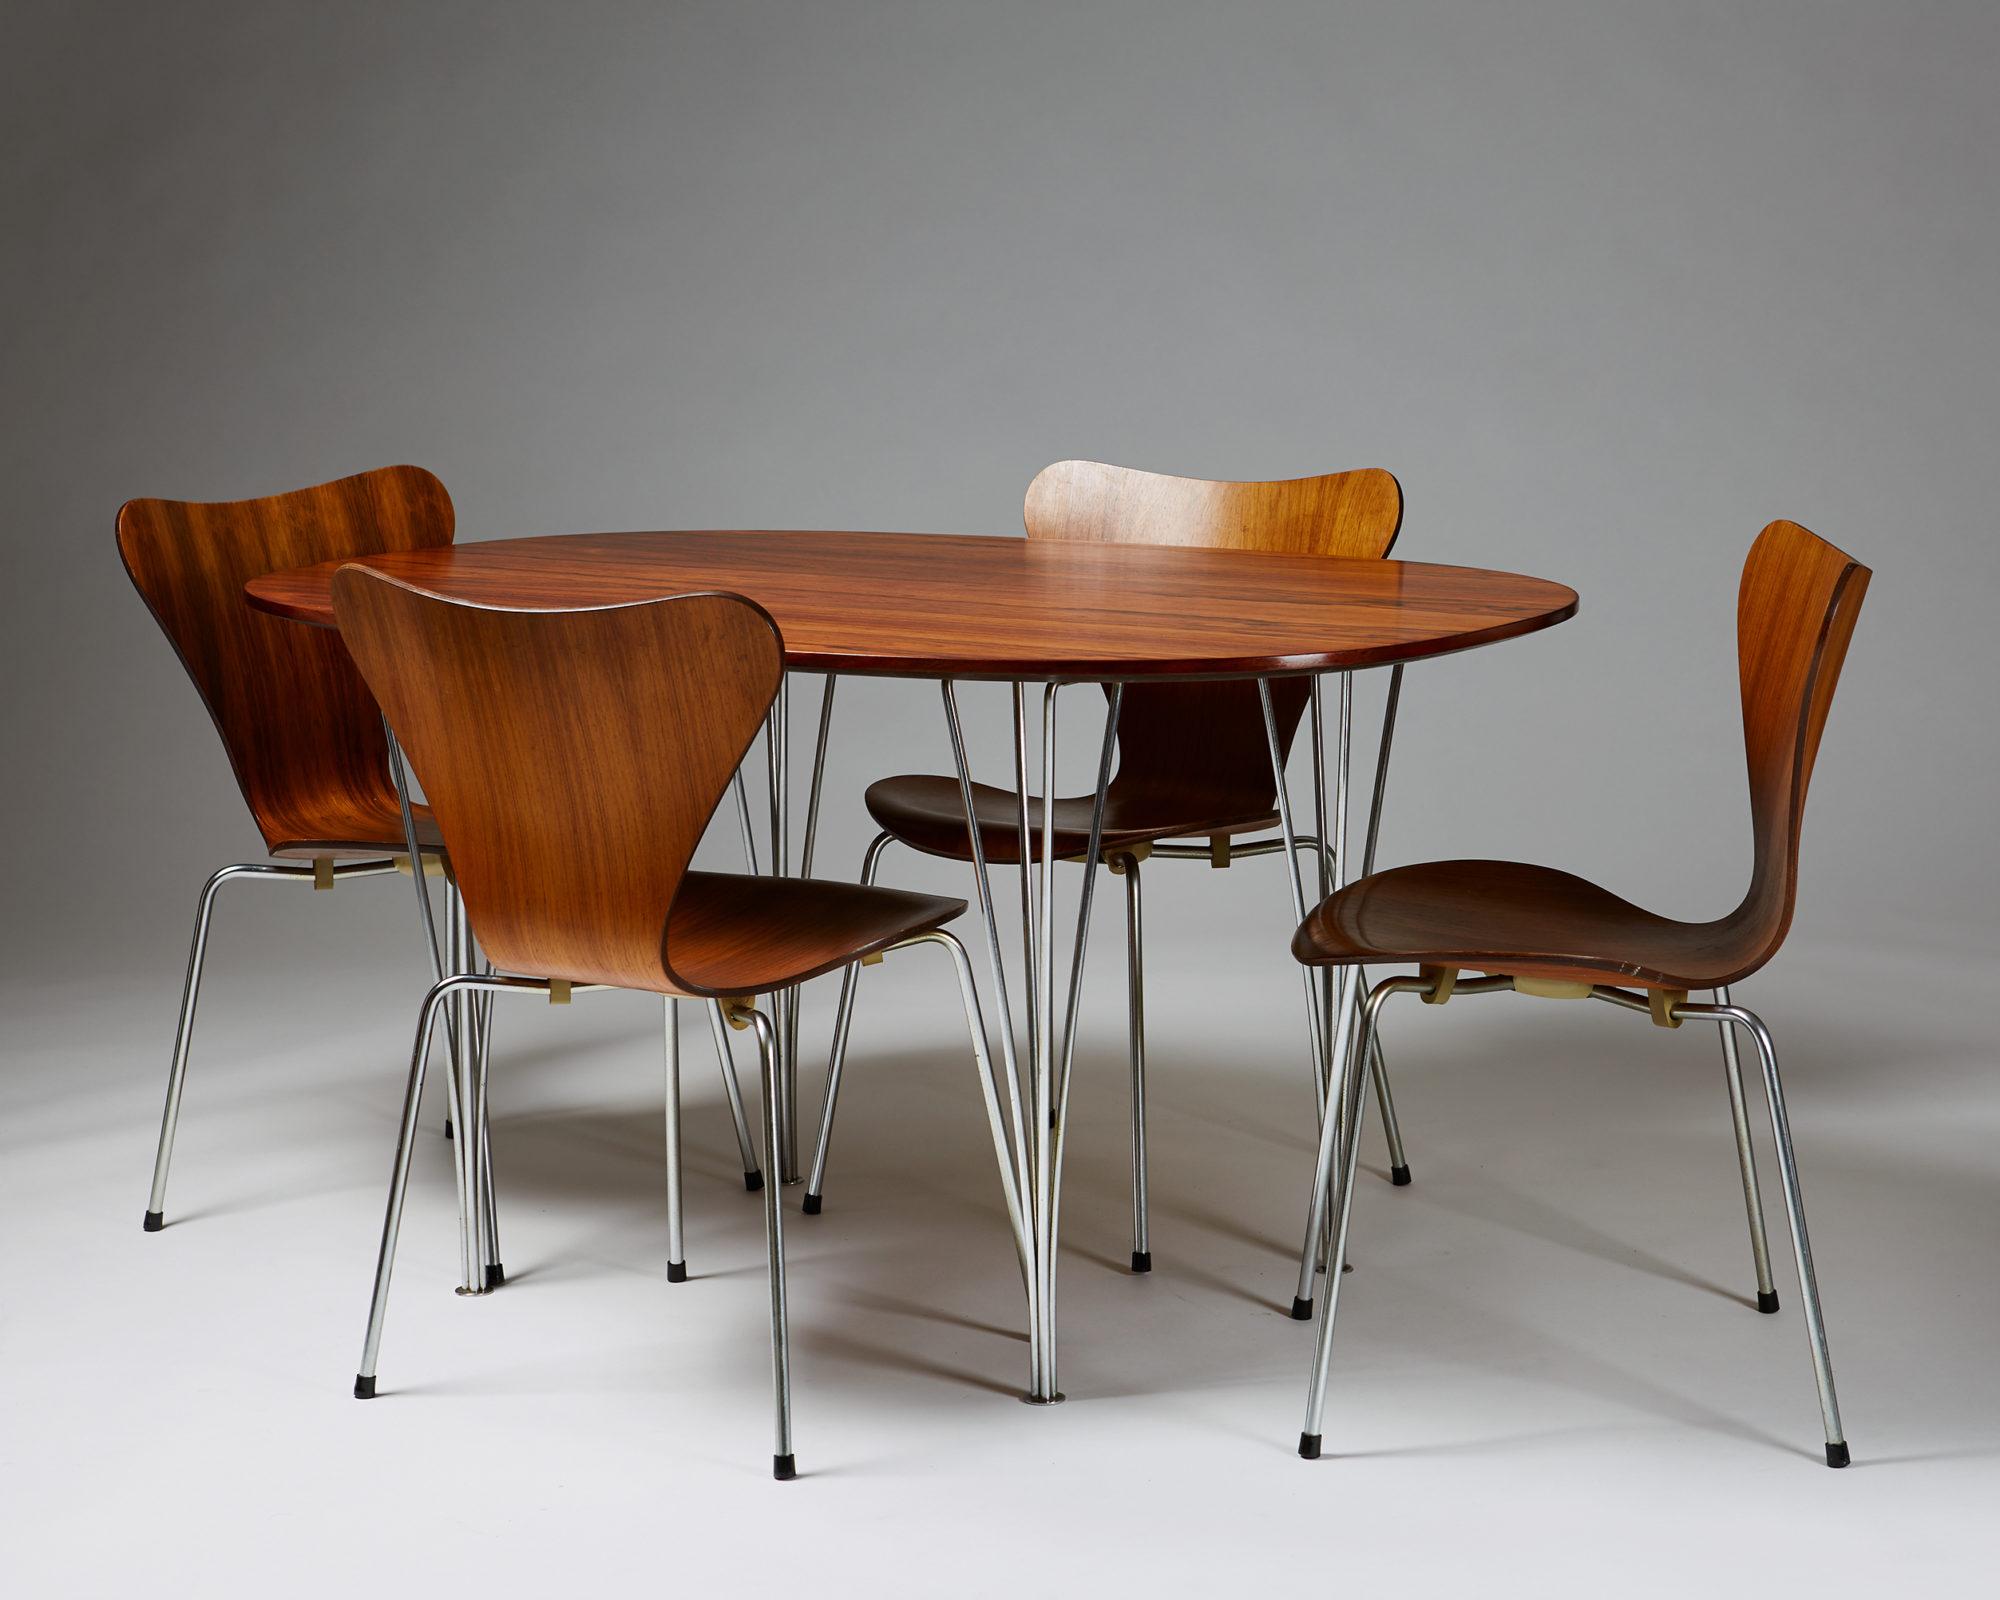 Ensemble de salle à manger conçu par Bruno Mathsson, Piet Hein et Arne Jacobsen pour Fritz Hansen,
Danemark, années 1950-1960.

Bois de rose et acier.

Table :
H : 70 cm / 2' 4''
L: 135 cm / 4' 5 1/2''
W: 90cm / 3'

Présidents :
H : 76 cm / 2' 6